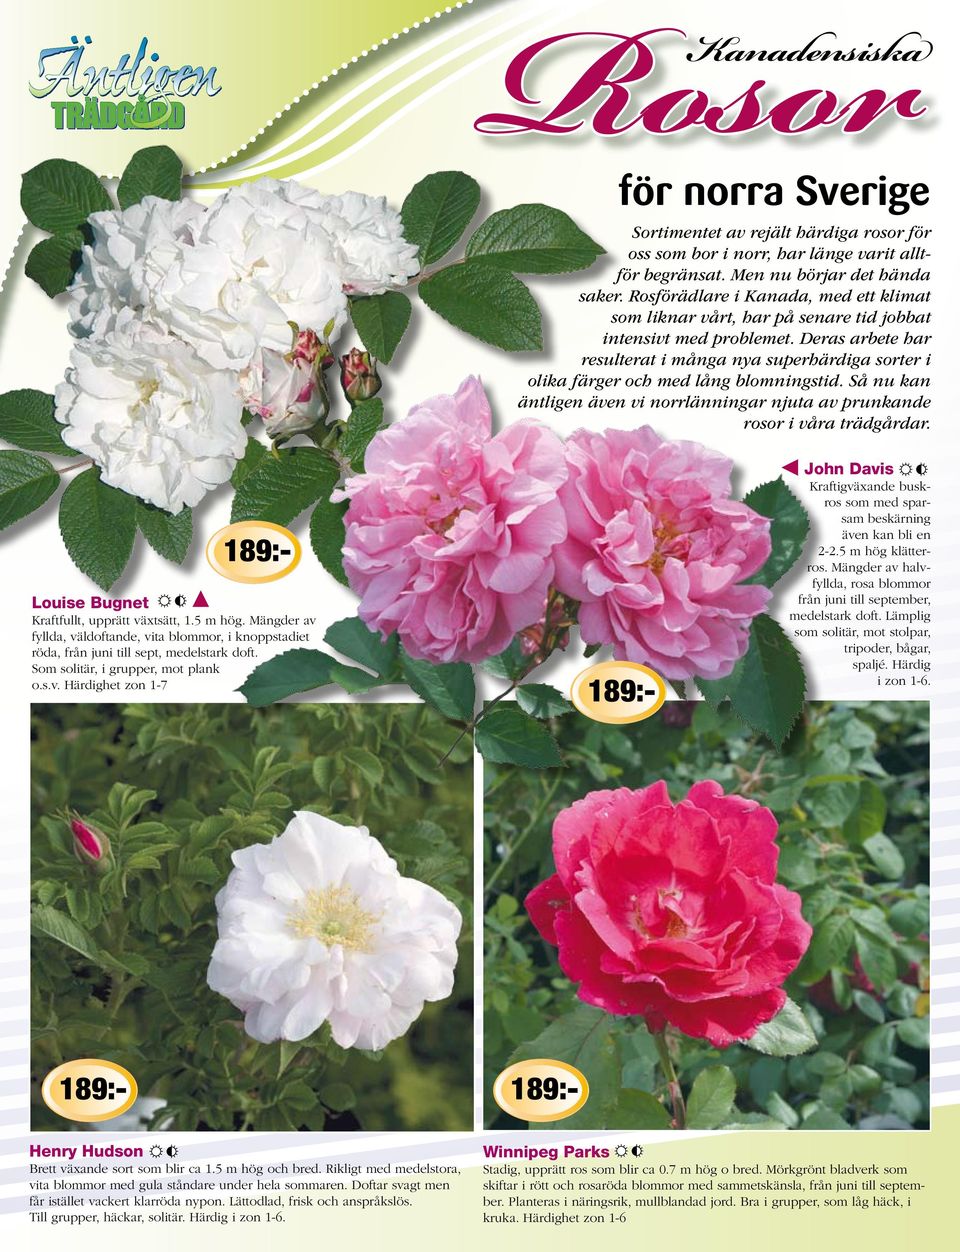 Deras arbete har resulterat i många nya superhärdiga sorter i olika färger och med lång blomningstid. Så nu kan äntligen även vi norrlänningar njuta av prunkande rosor i våra trädgårdar.